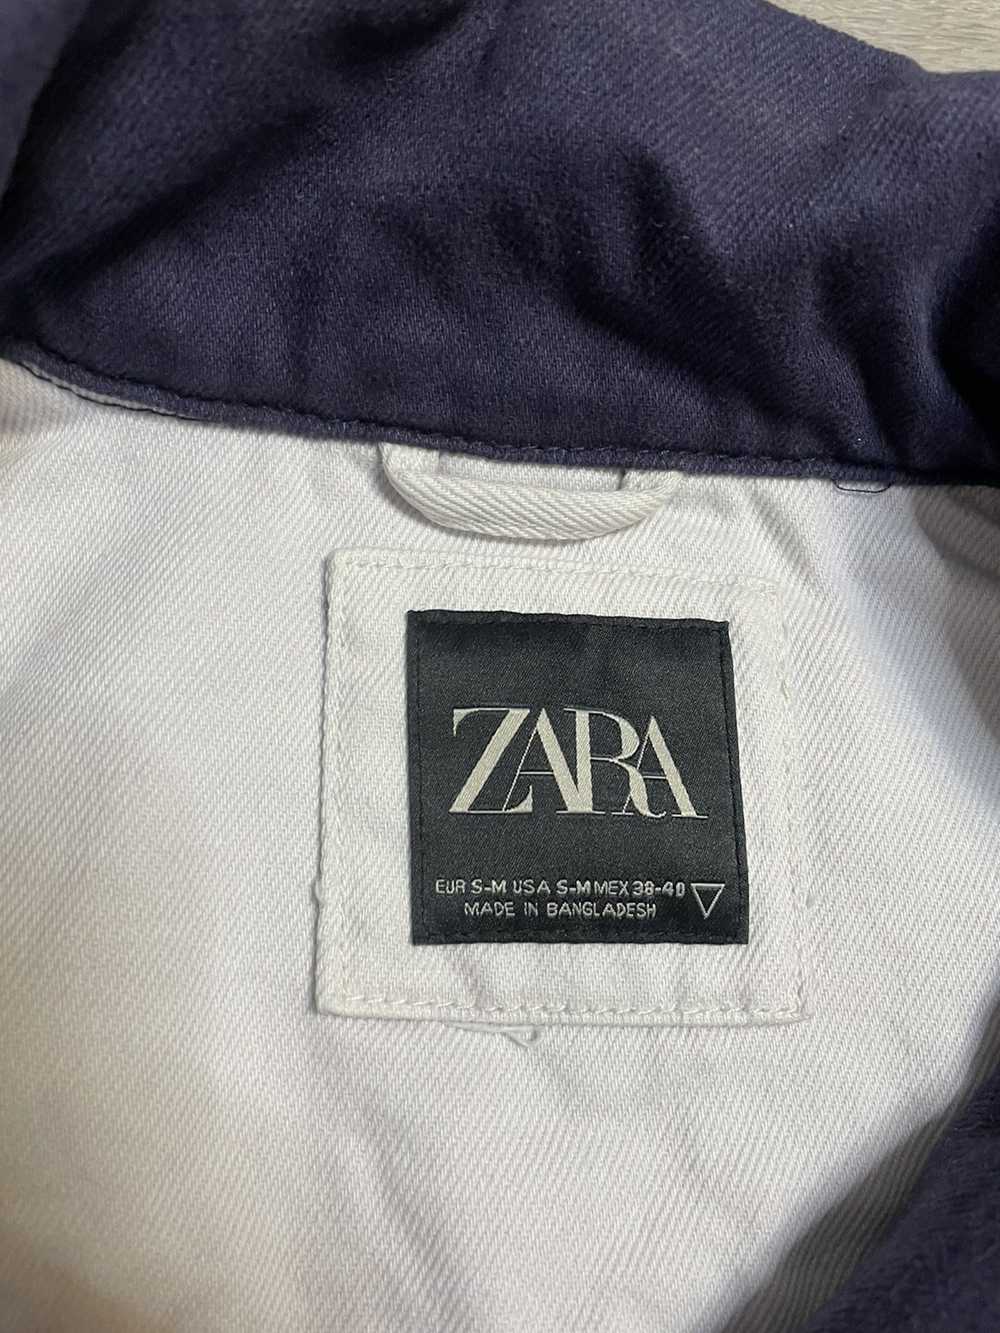 Zara Zara Racing Bombers Jacket - image 8